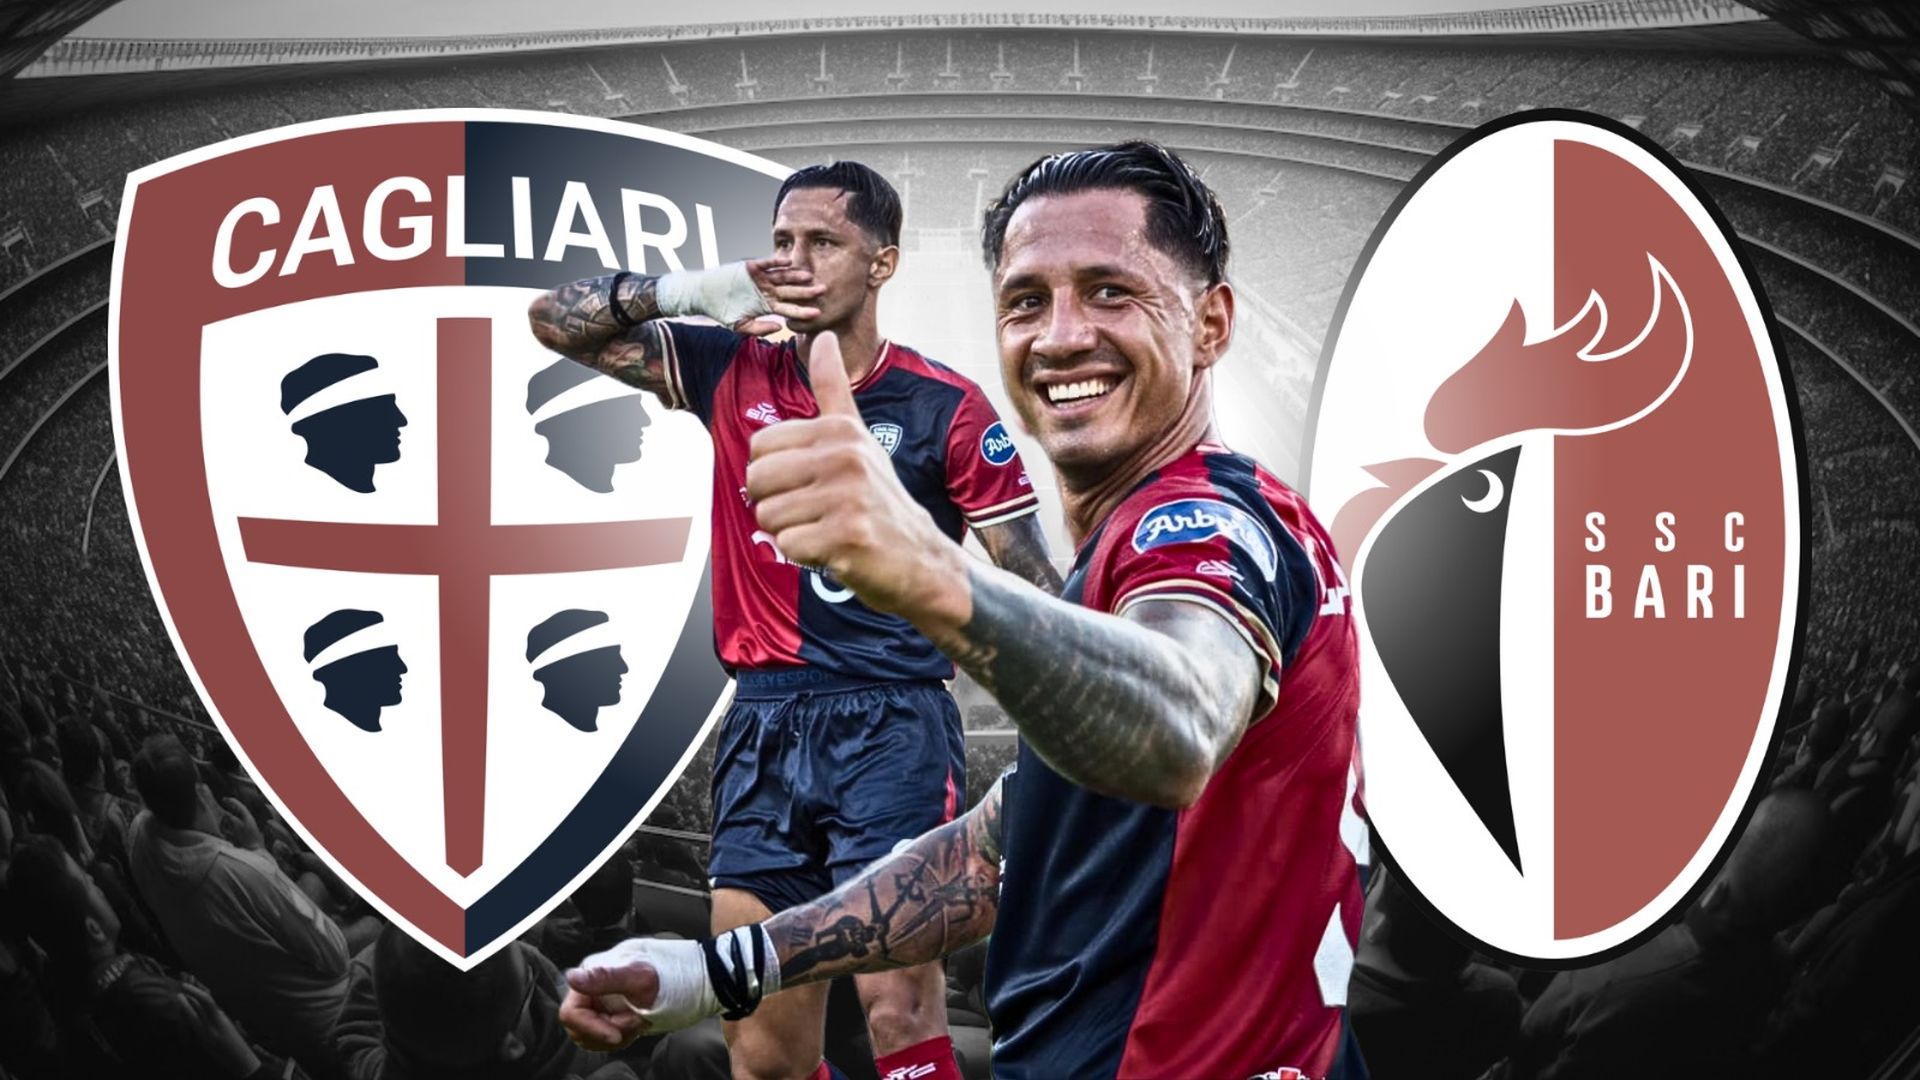 Cagliari vs Bari EN VIVO AHORA: con Gianluca Lapadula titular, 0-0 por final ida de ascenso en Serie B